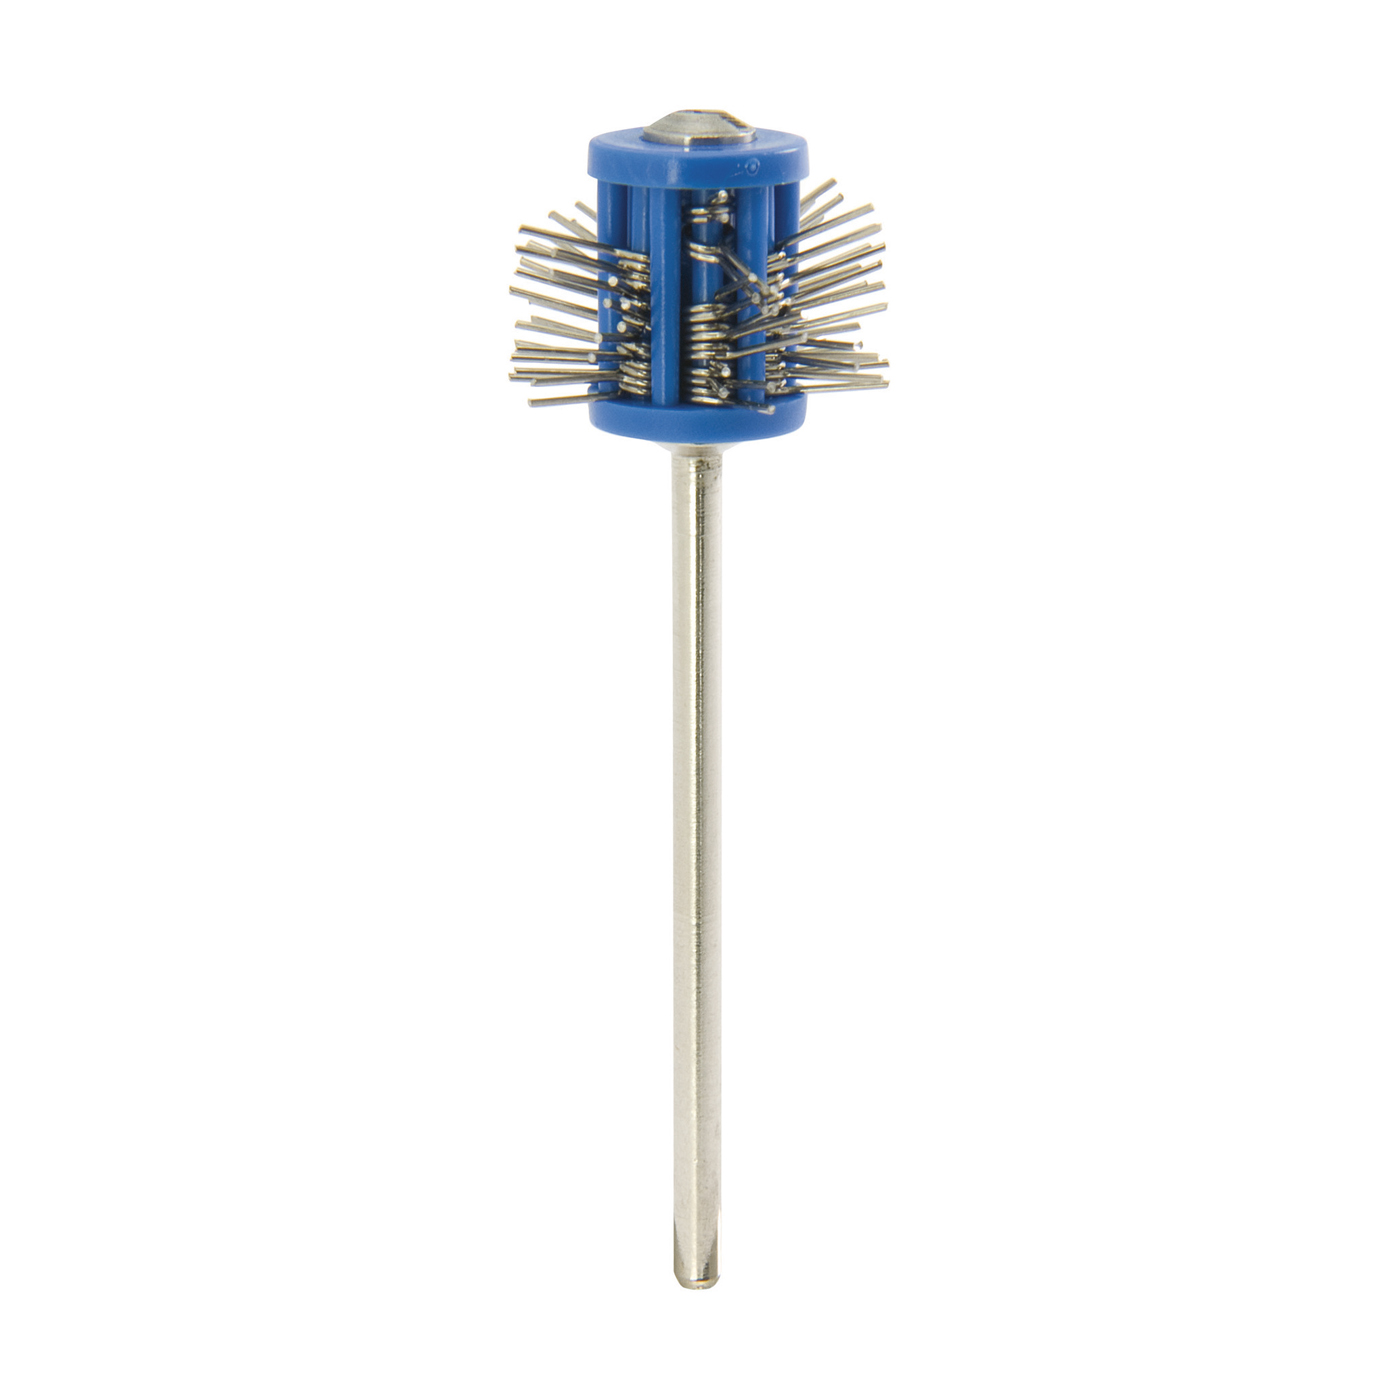 Minimatt Matting Wire Brush, ø 0.40 mm, Blue, Short Wires - 1 piece